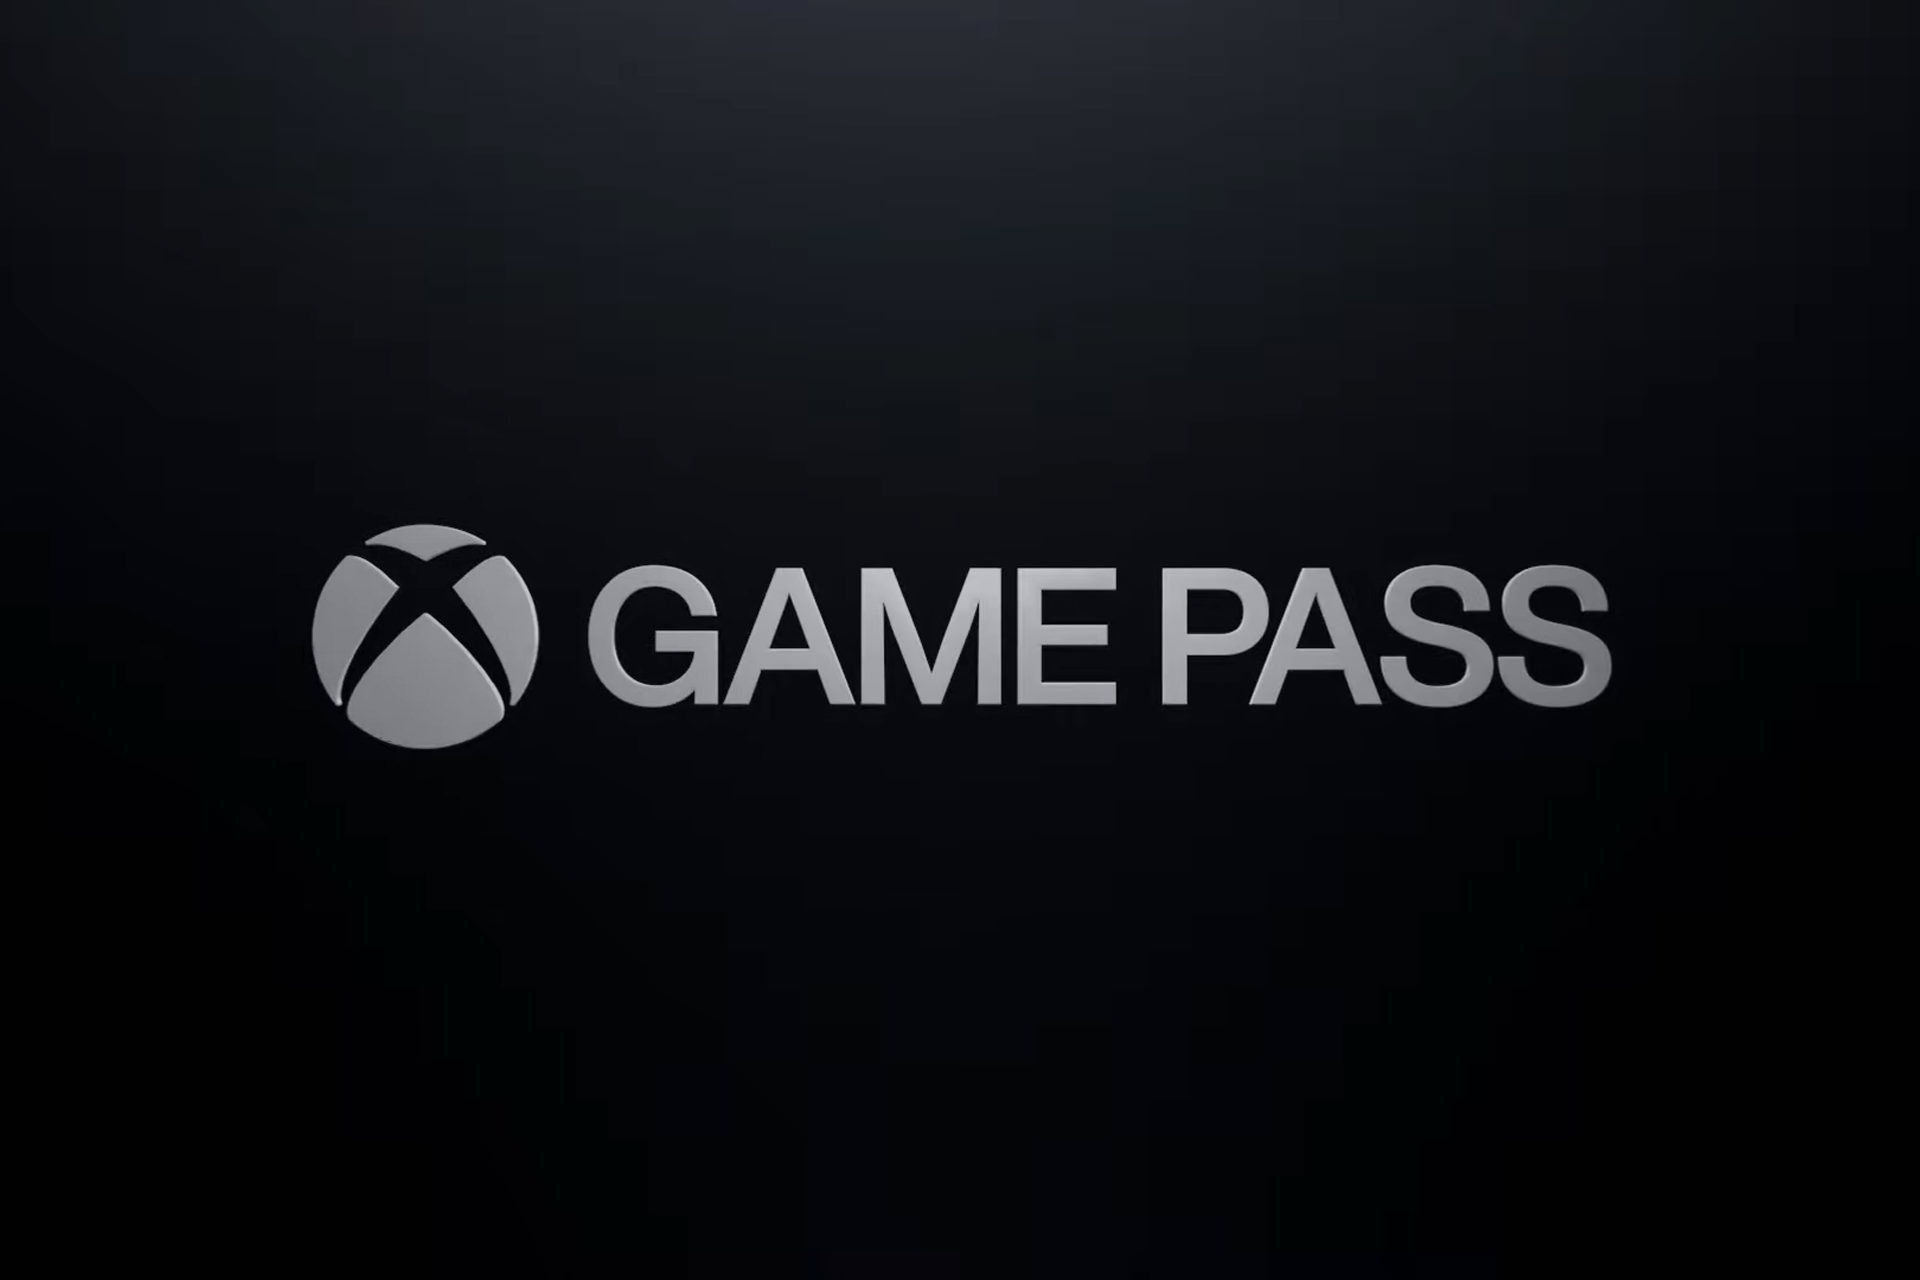 نسخه کامپیوتر سرویس گیم پس به PC Game Pass تغییر نام داد